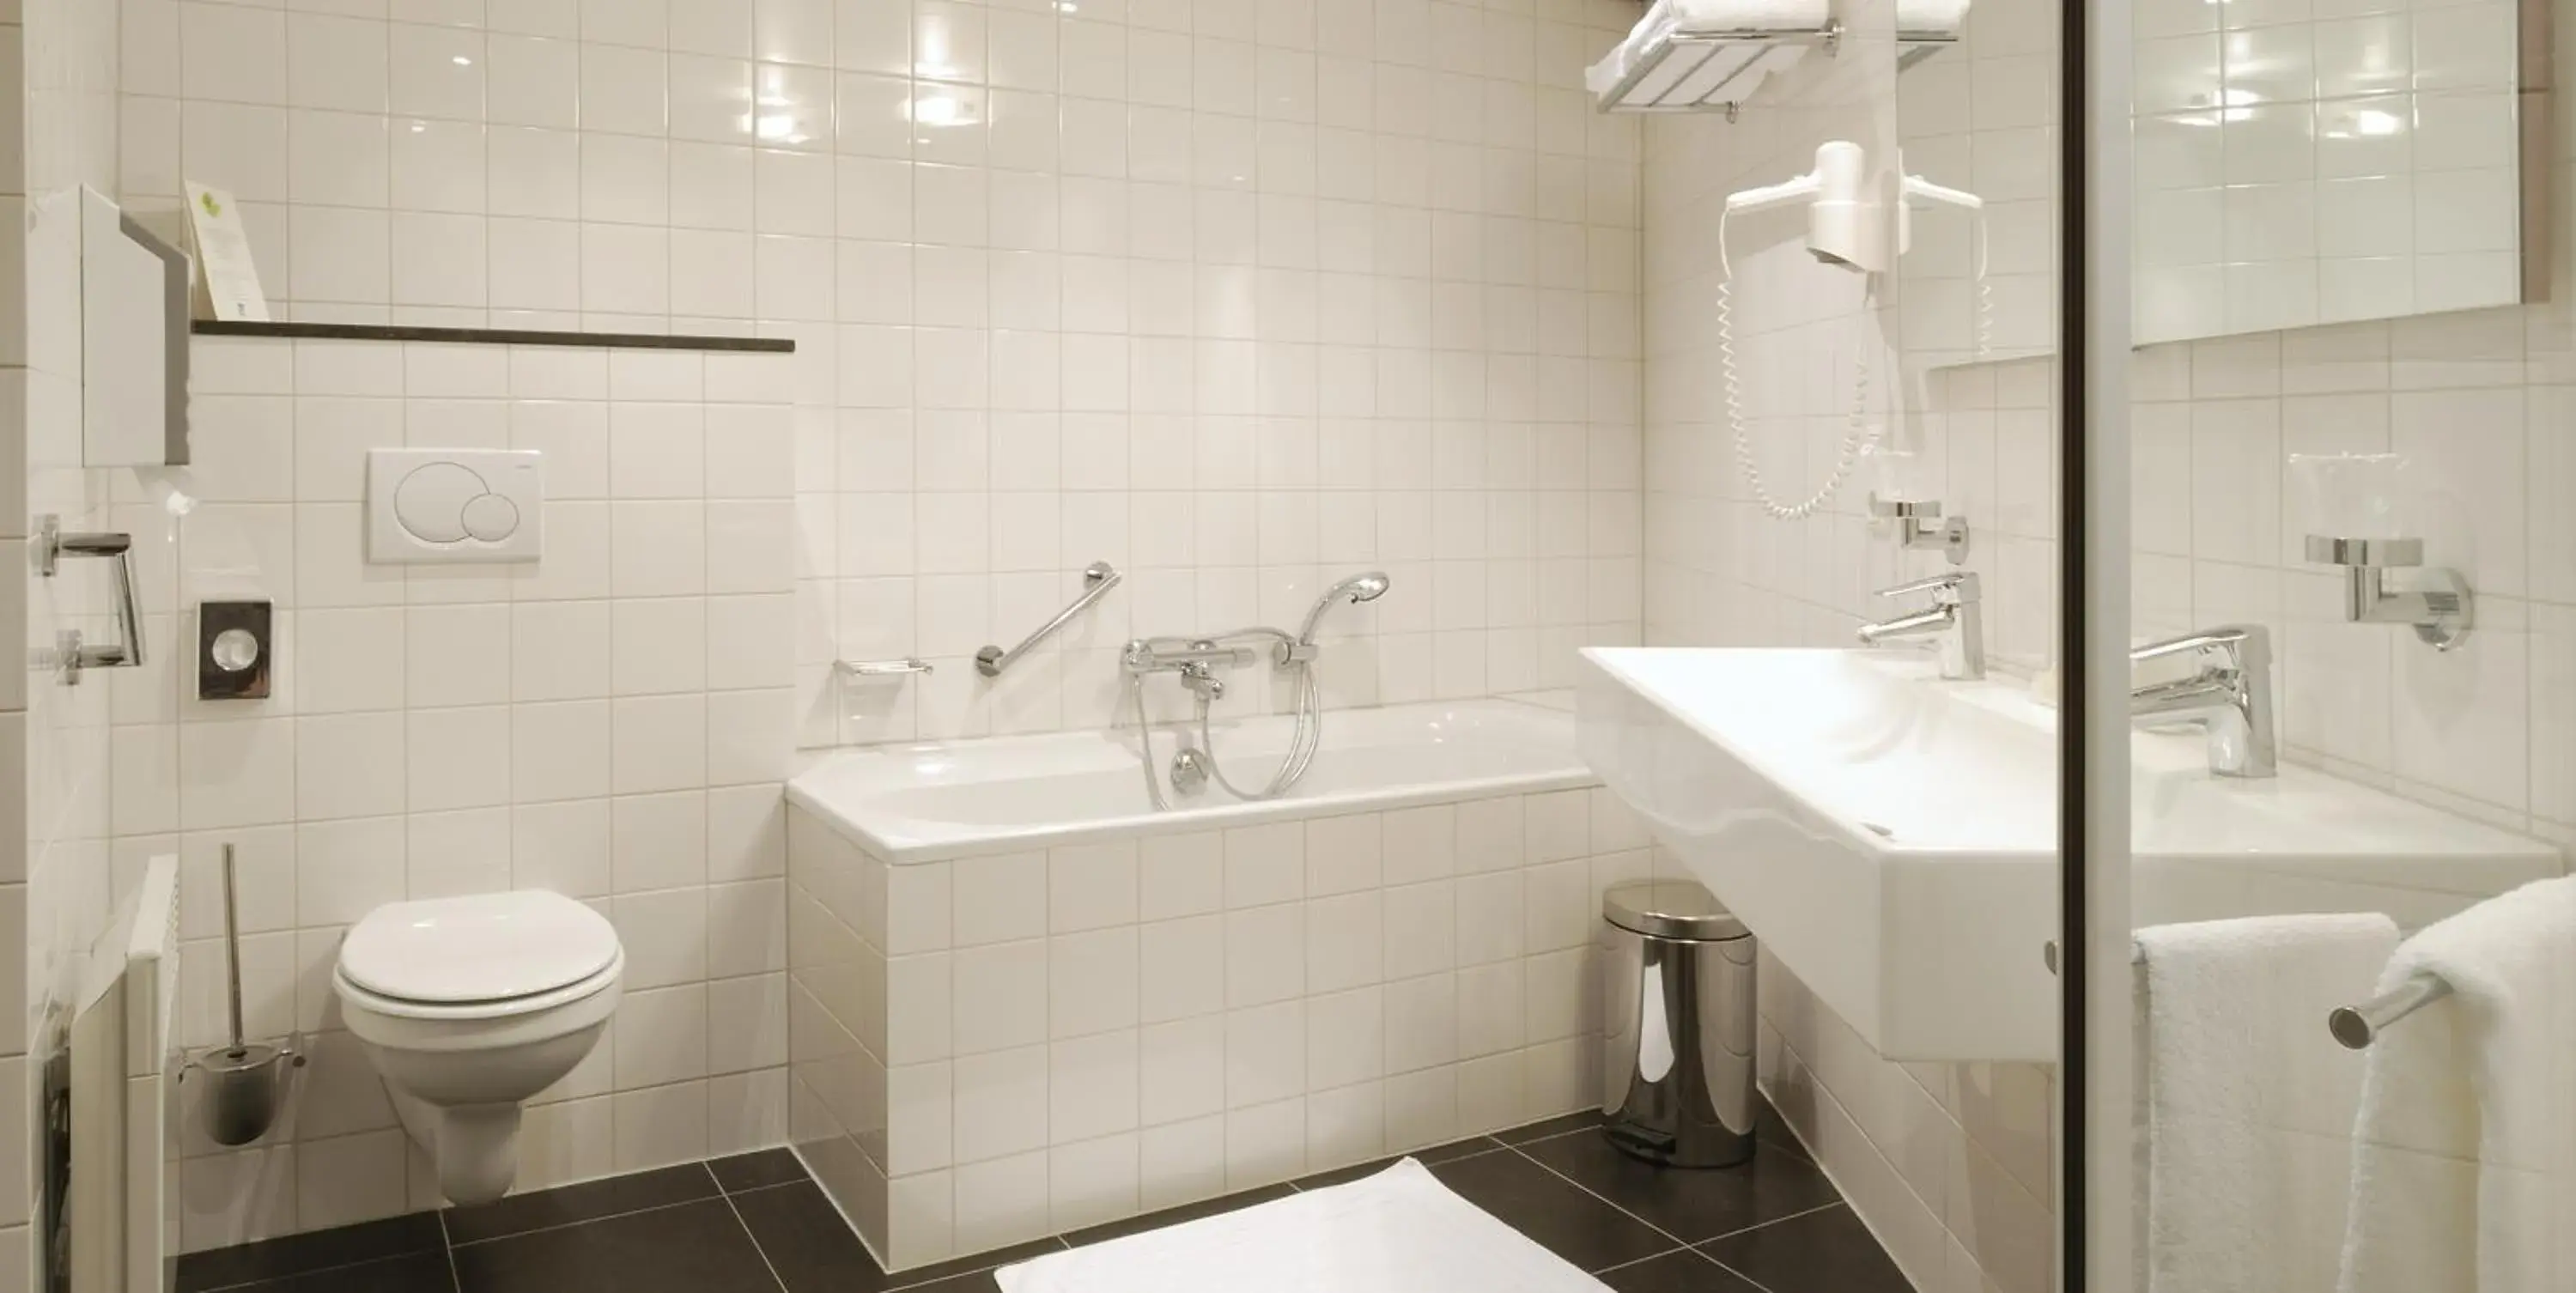 Bathroom in Hotel Creusen